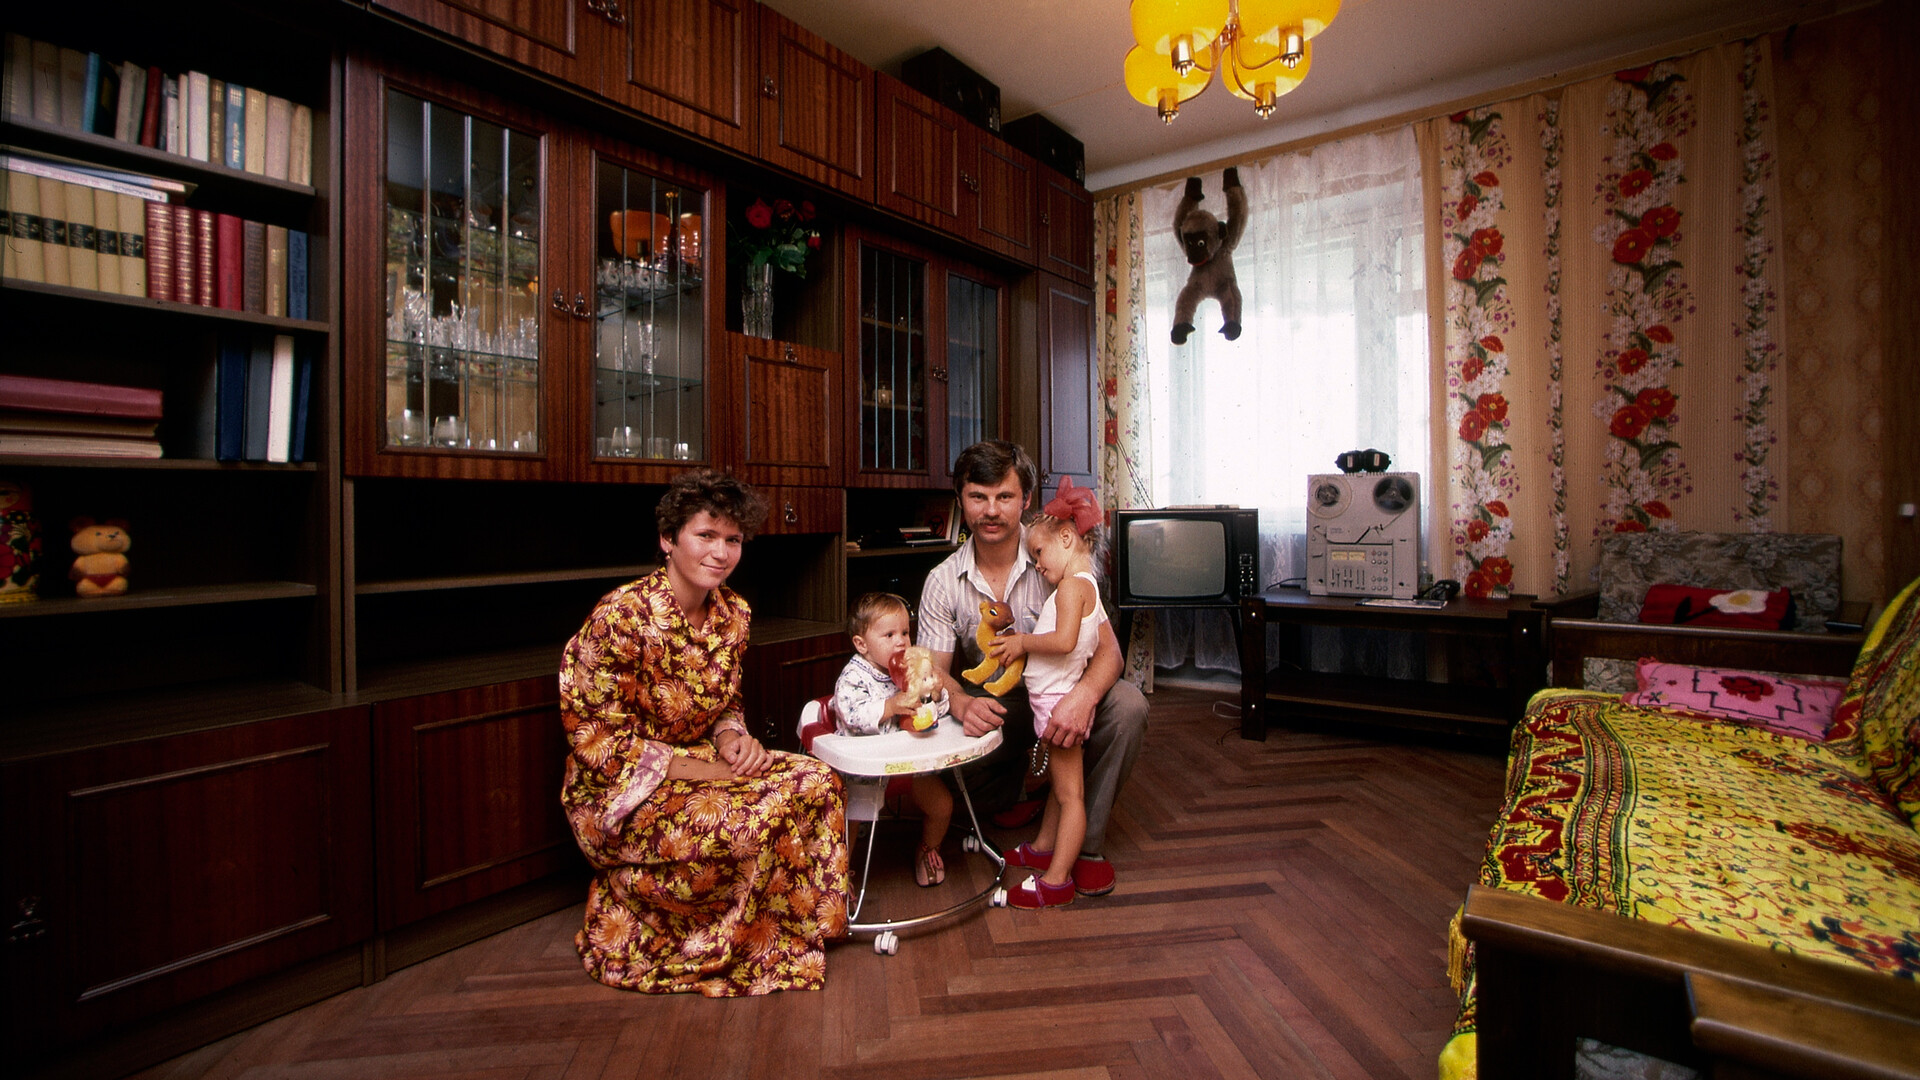 Wohnung in Moskau, 1987.